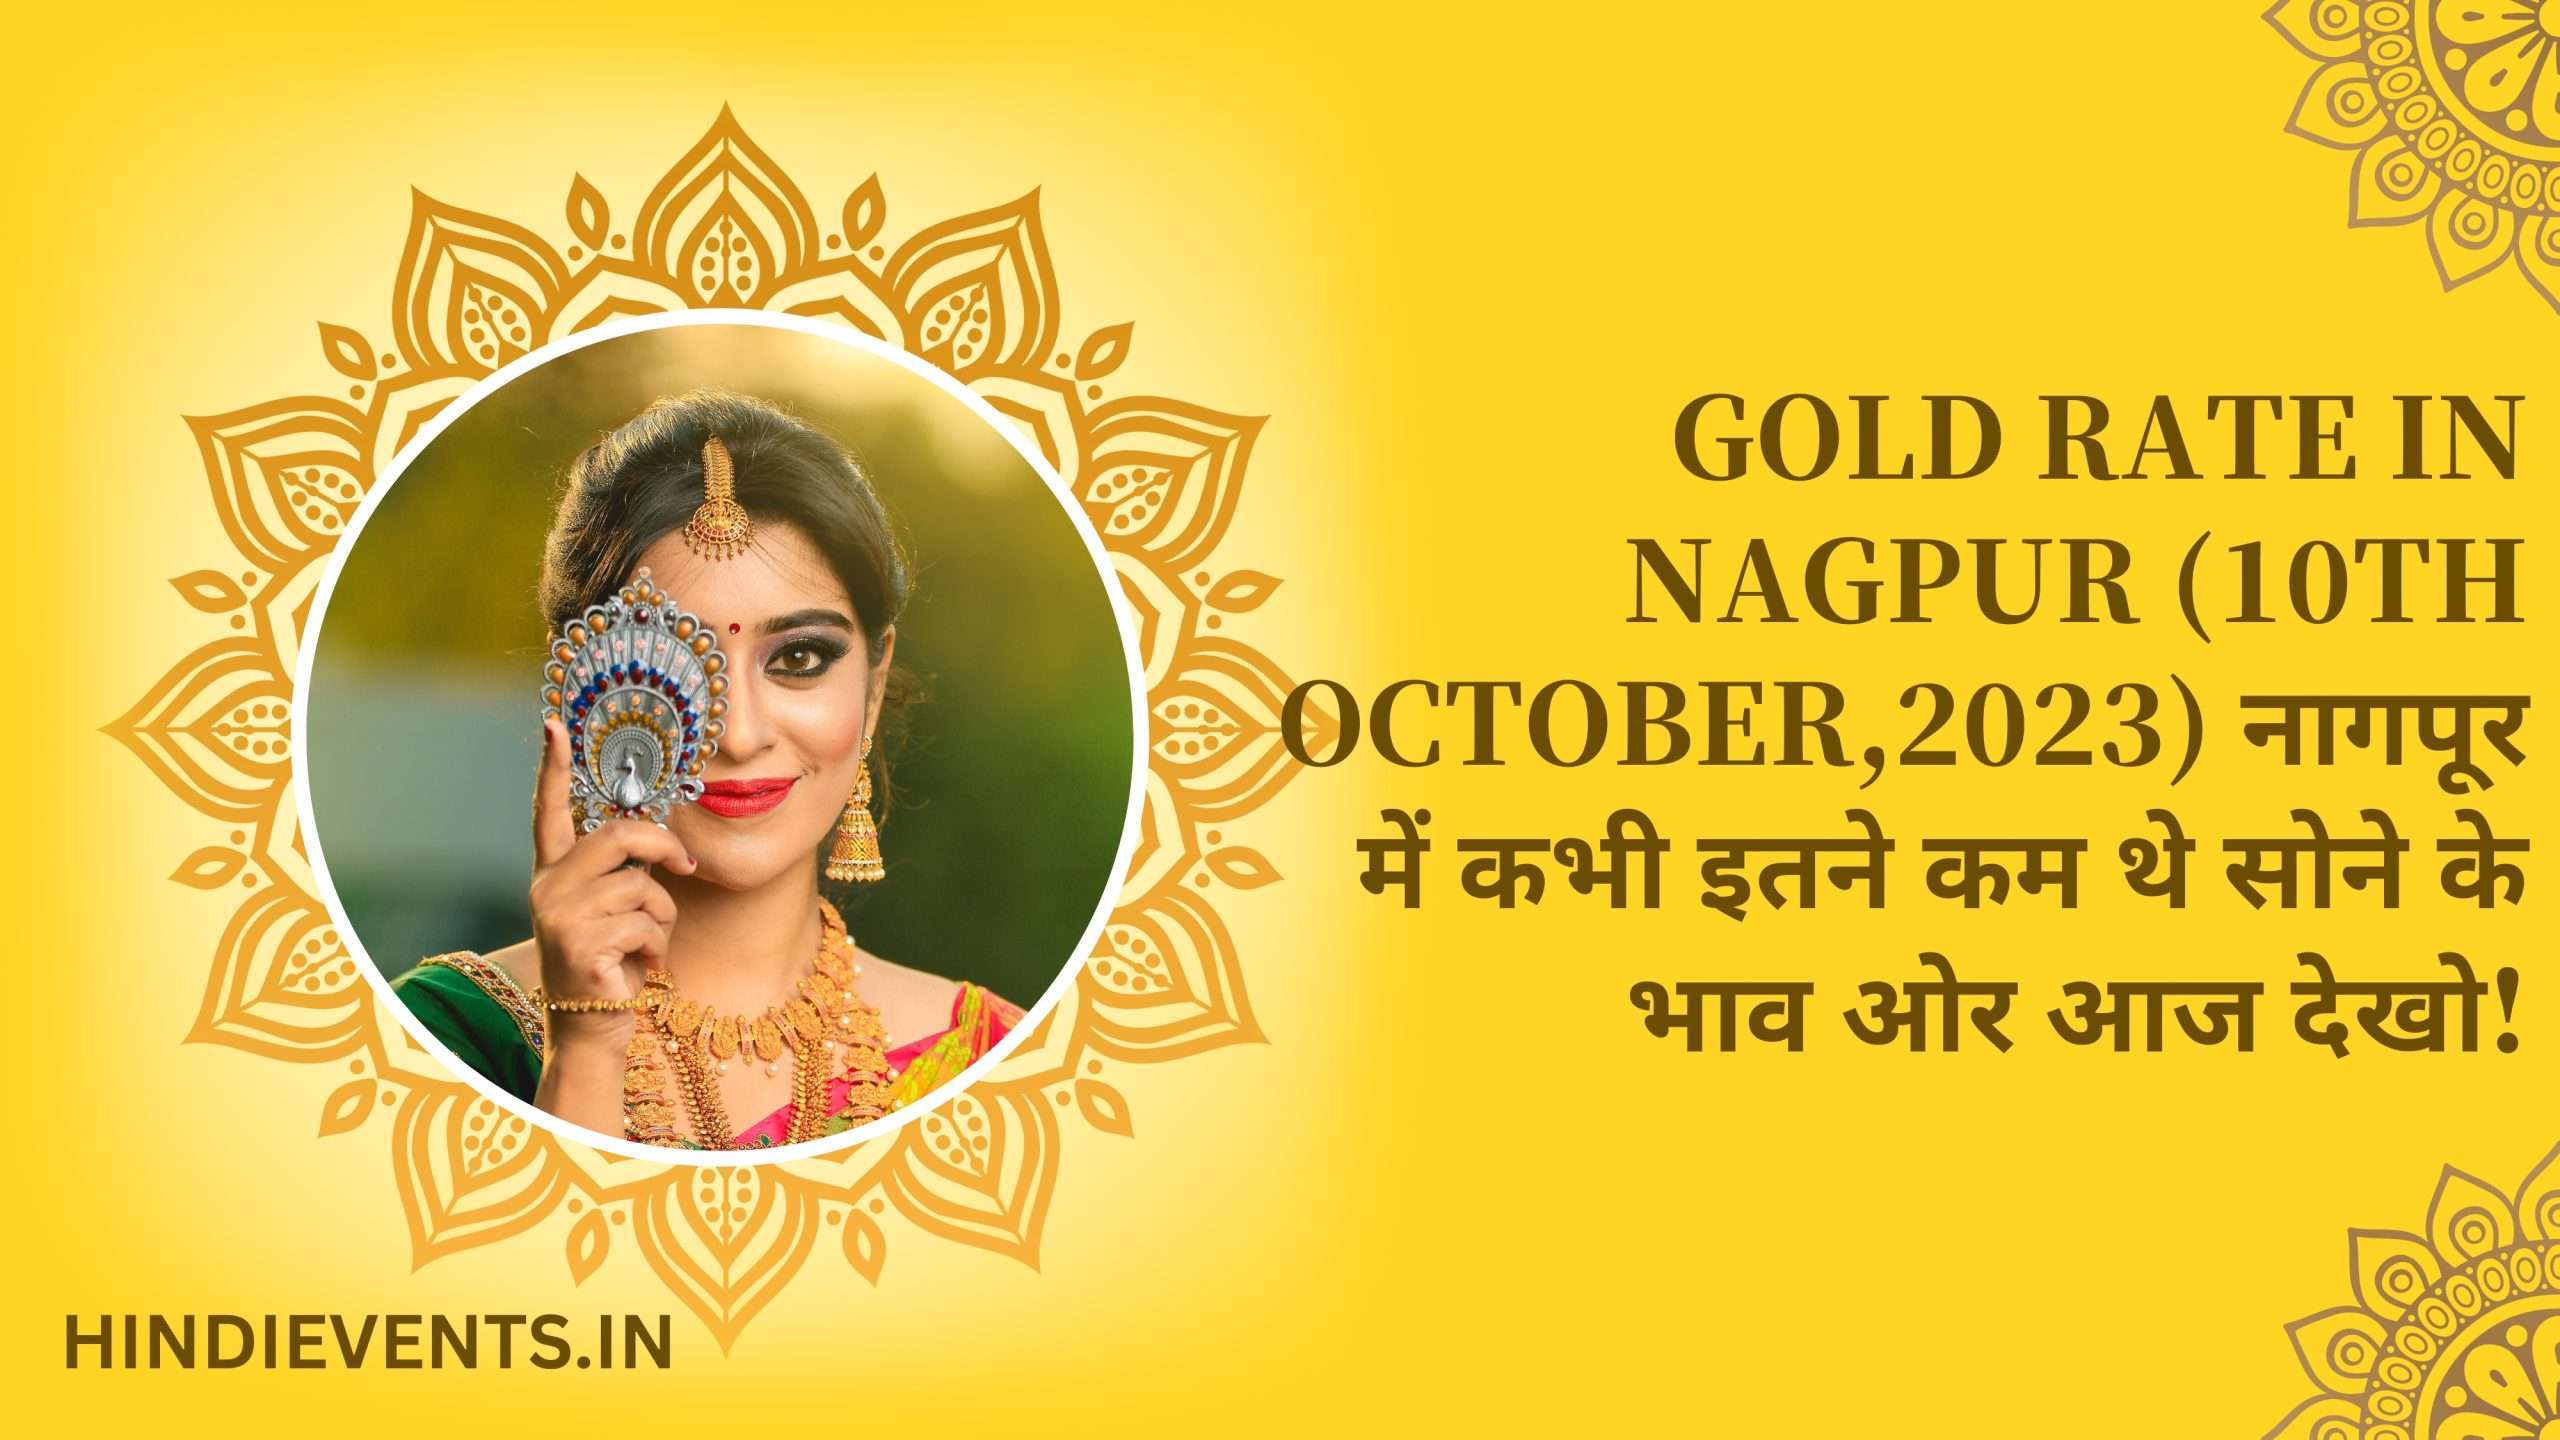 Gold Rate in Nagpur (10TH OCTOBER,2023) नागपूर में कभी इतने कम थे सोने के भाव ओर आज देखो!